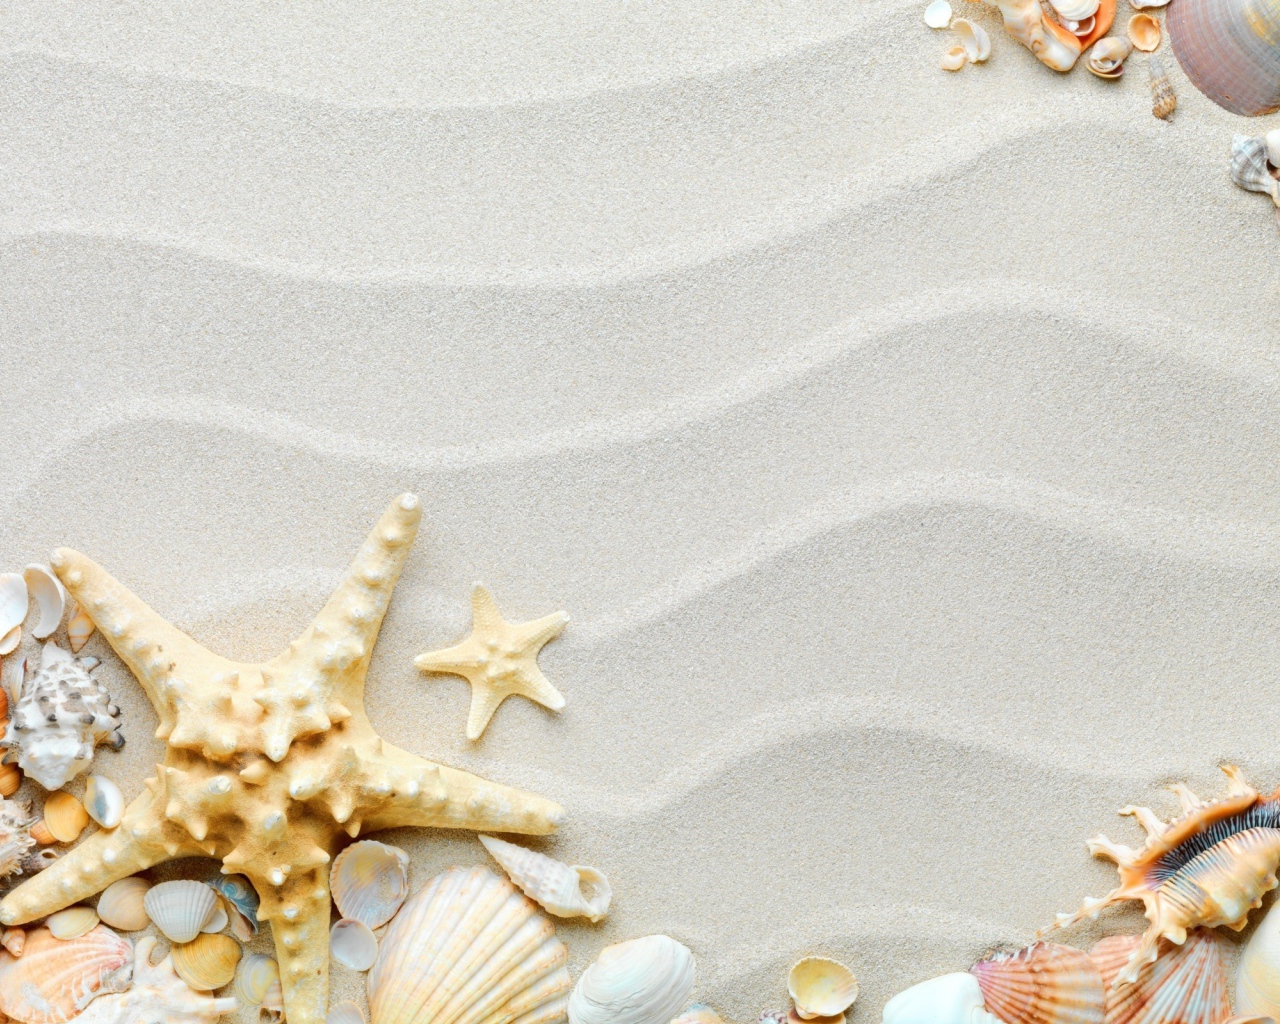 Красивые разные ракушки с морской звездой на волнистом белом песке 